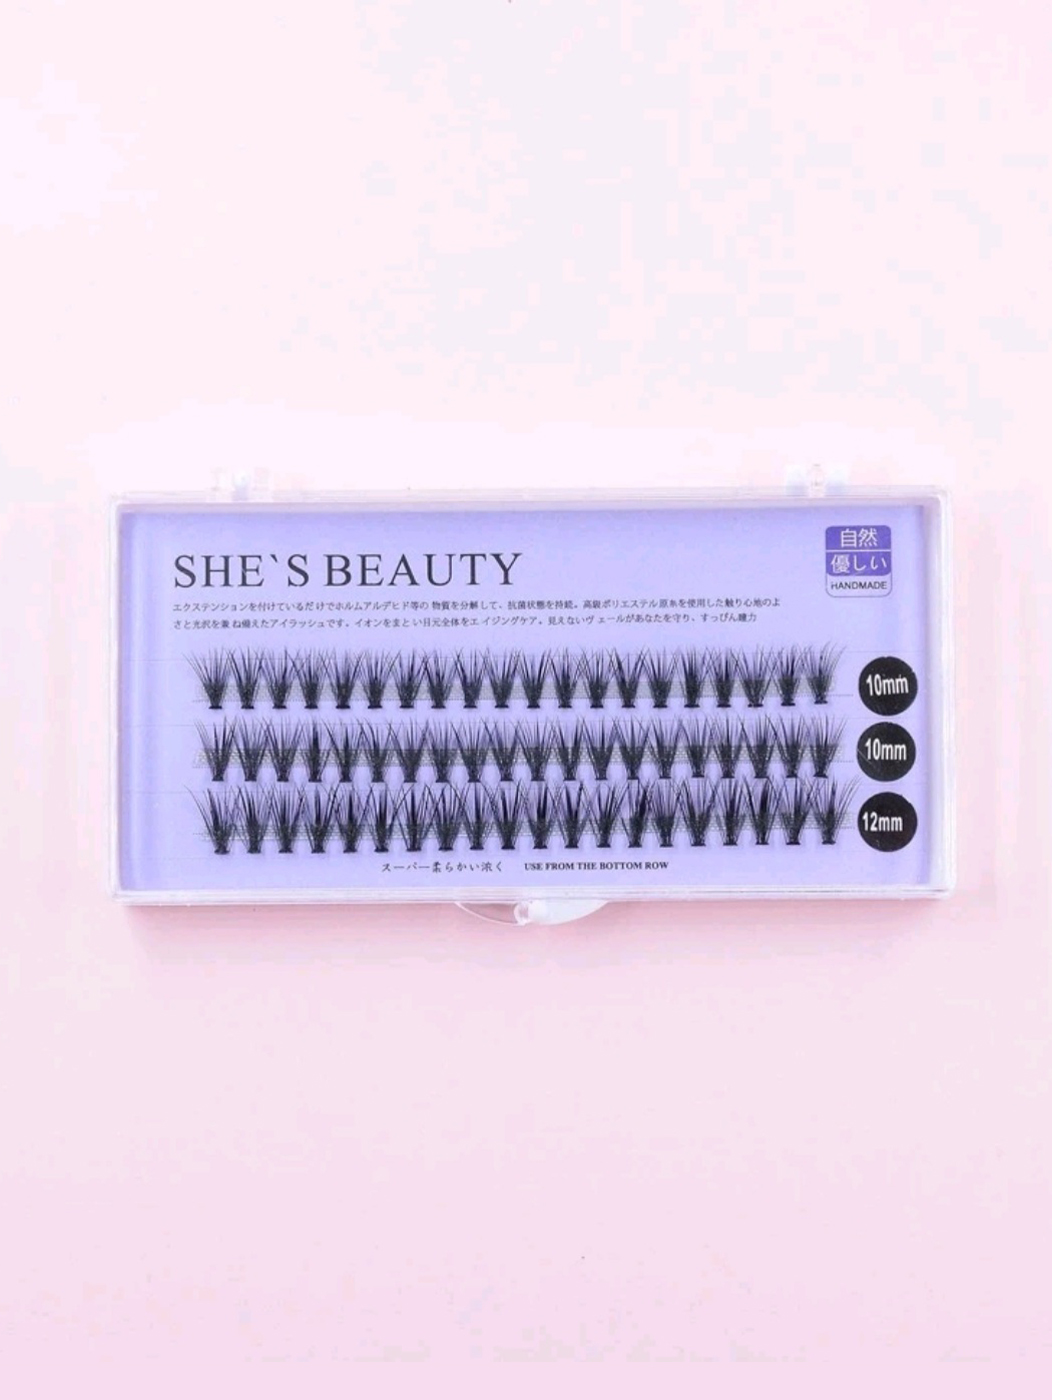 SHE’S BEAUTY – 10mm, 12mm